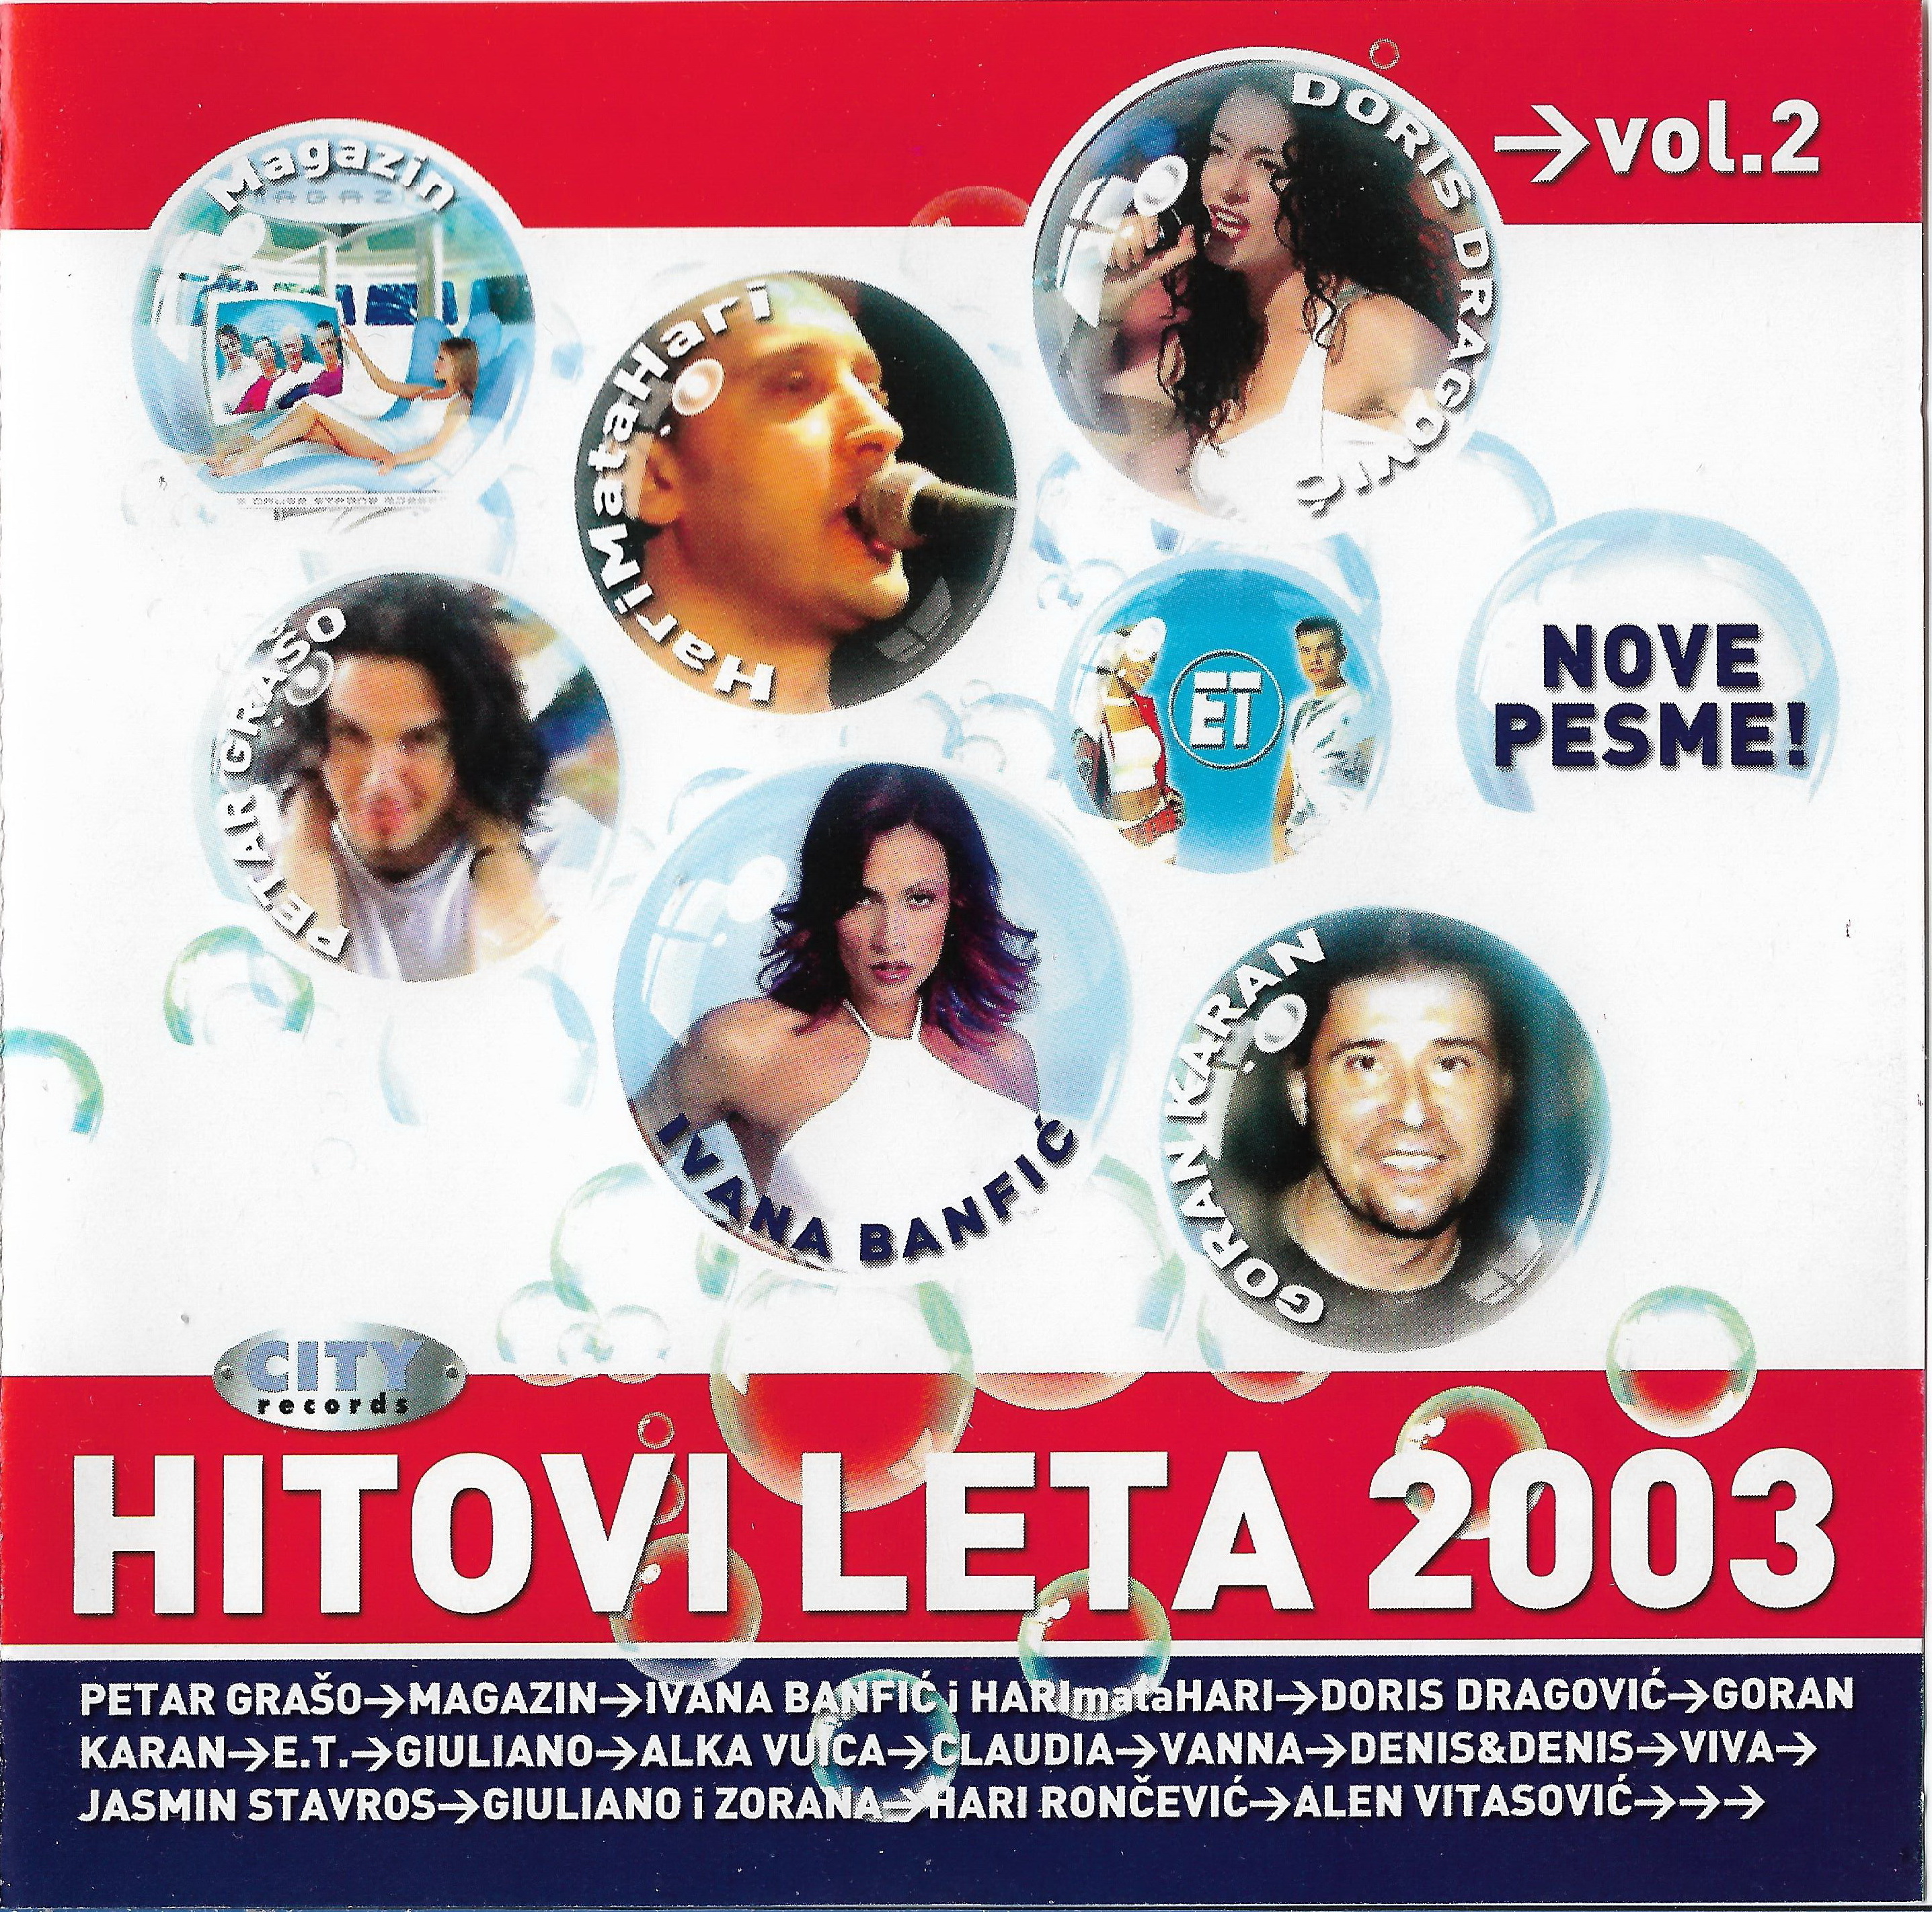 HL 2003 Vol 2 1 a